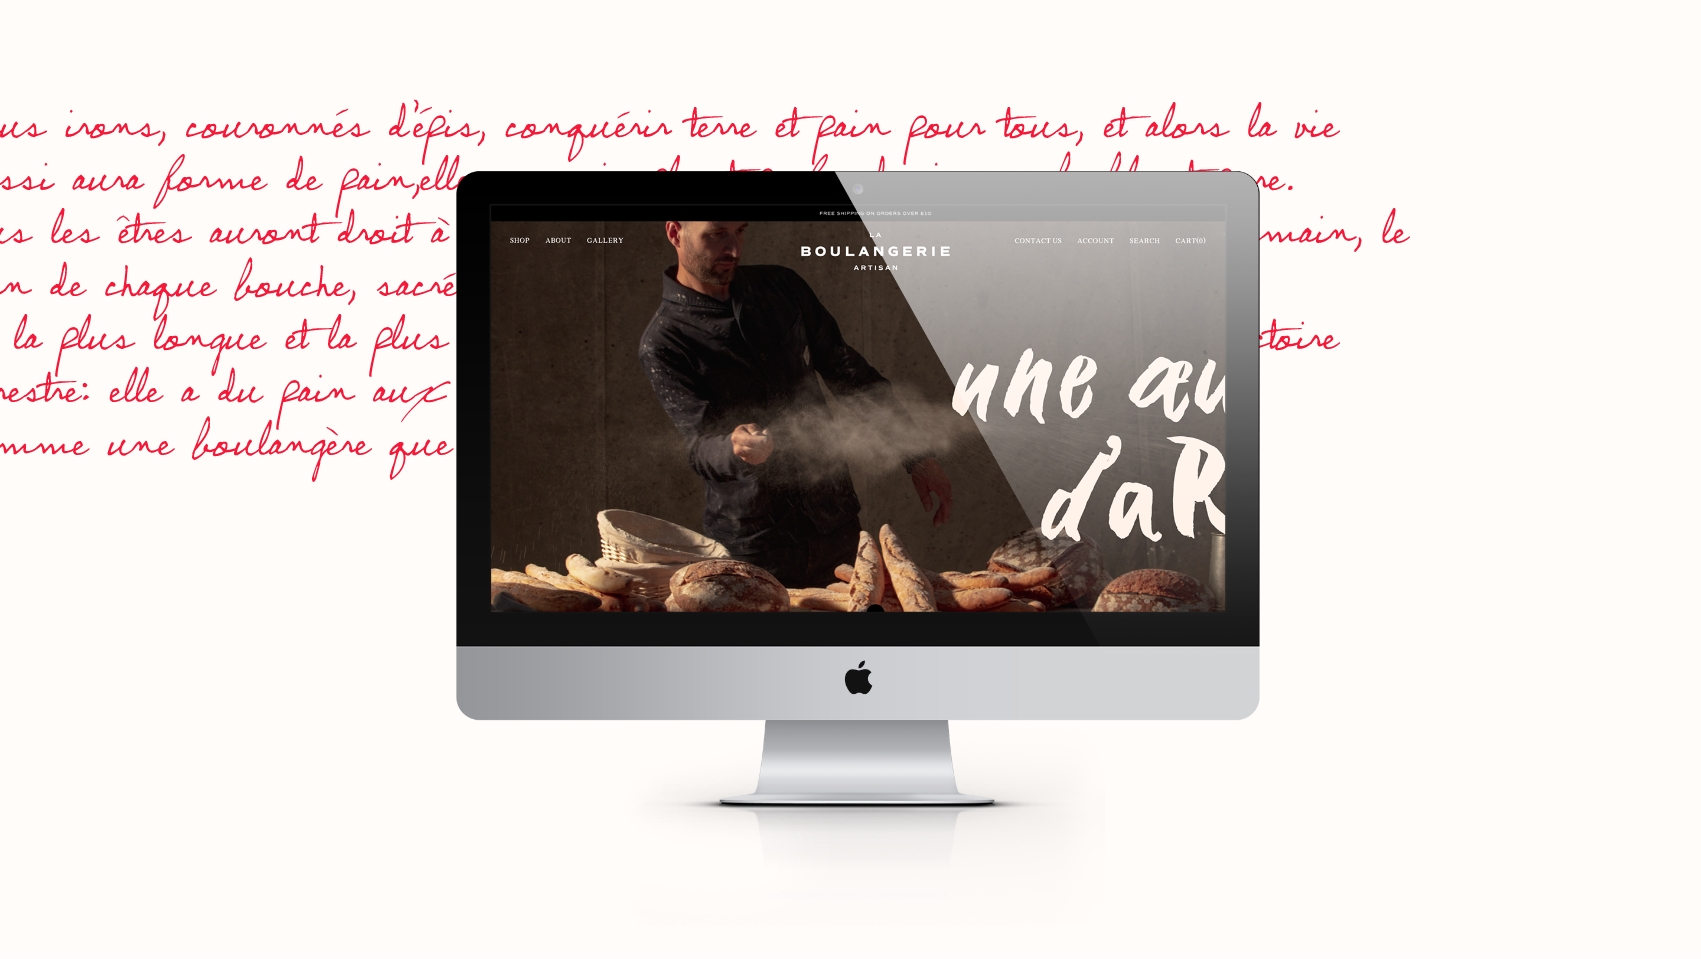 La Boulangerie website